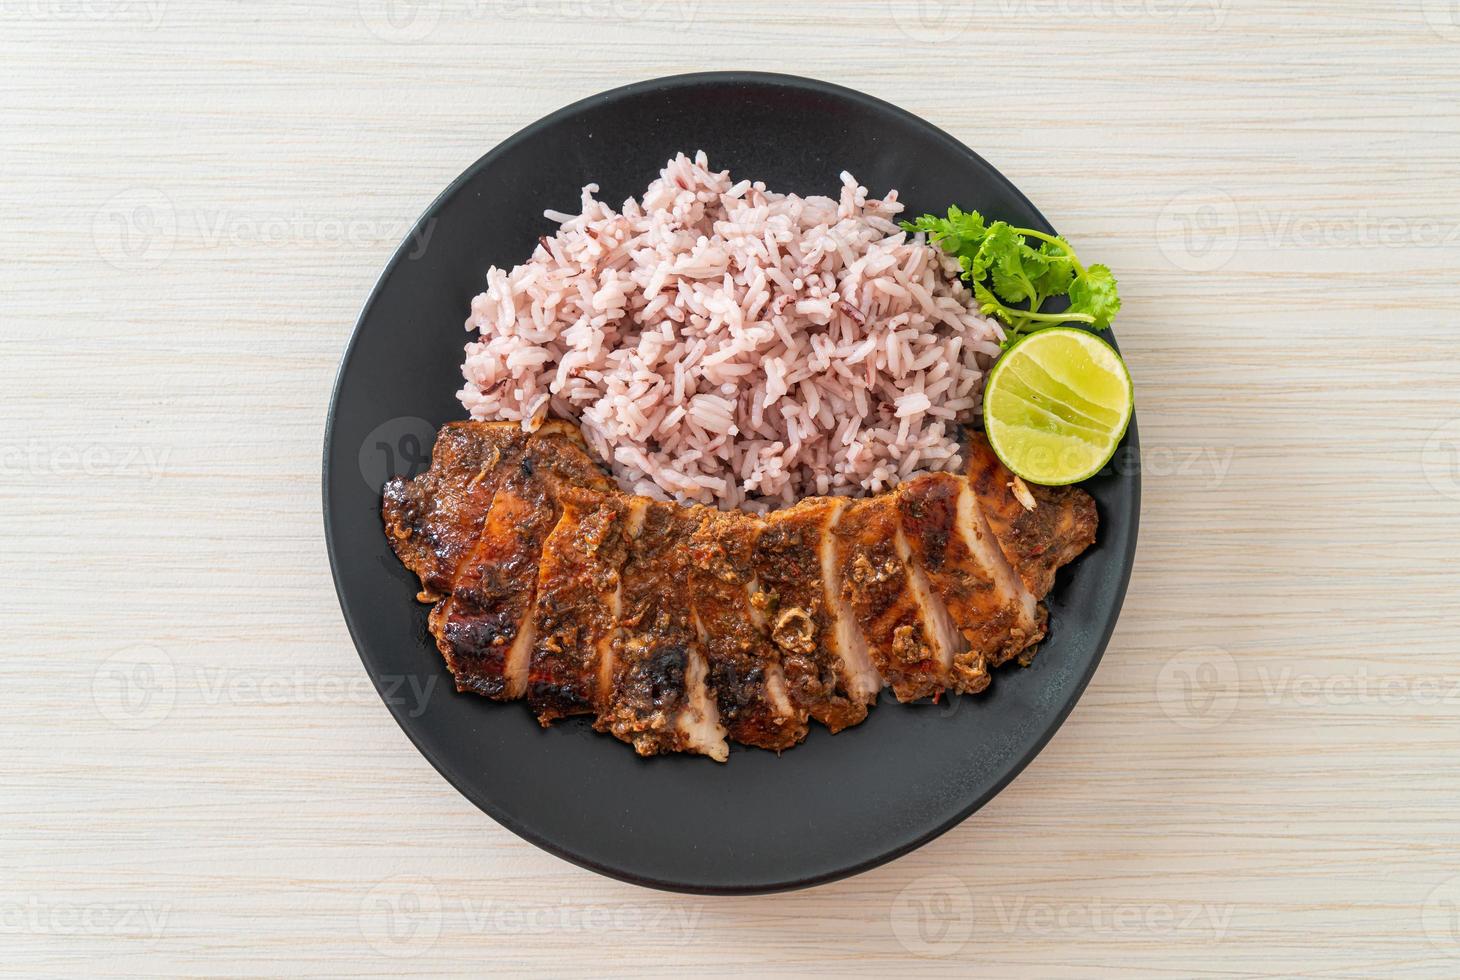 würzig gegrilltes jamaikanisches Jerk Chicken mit Reis - jamaikanische Küche foto